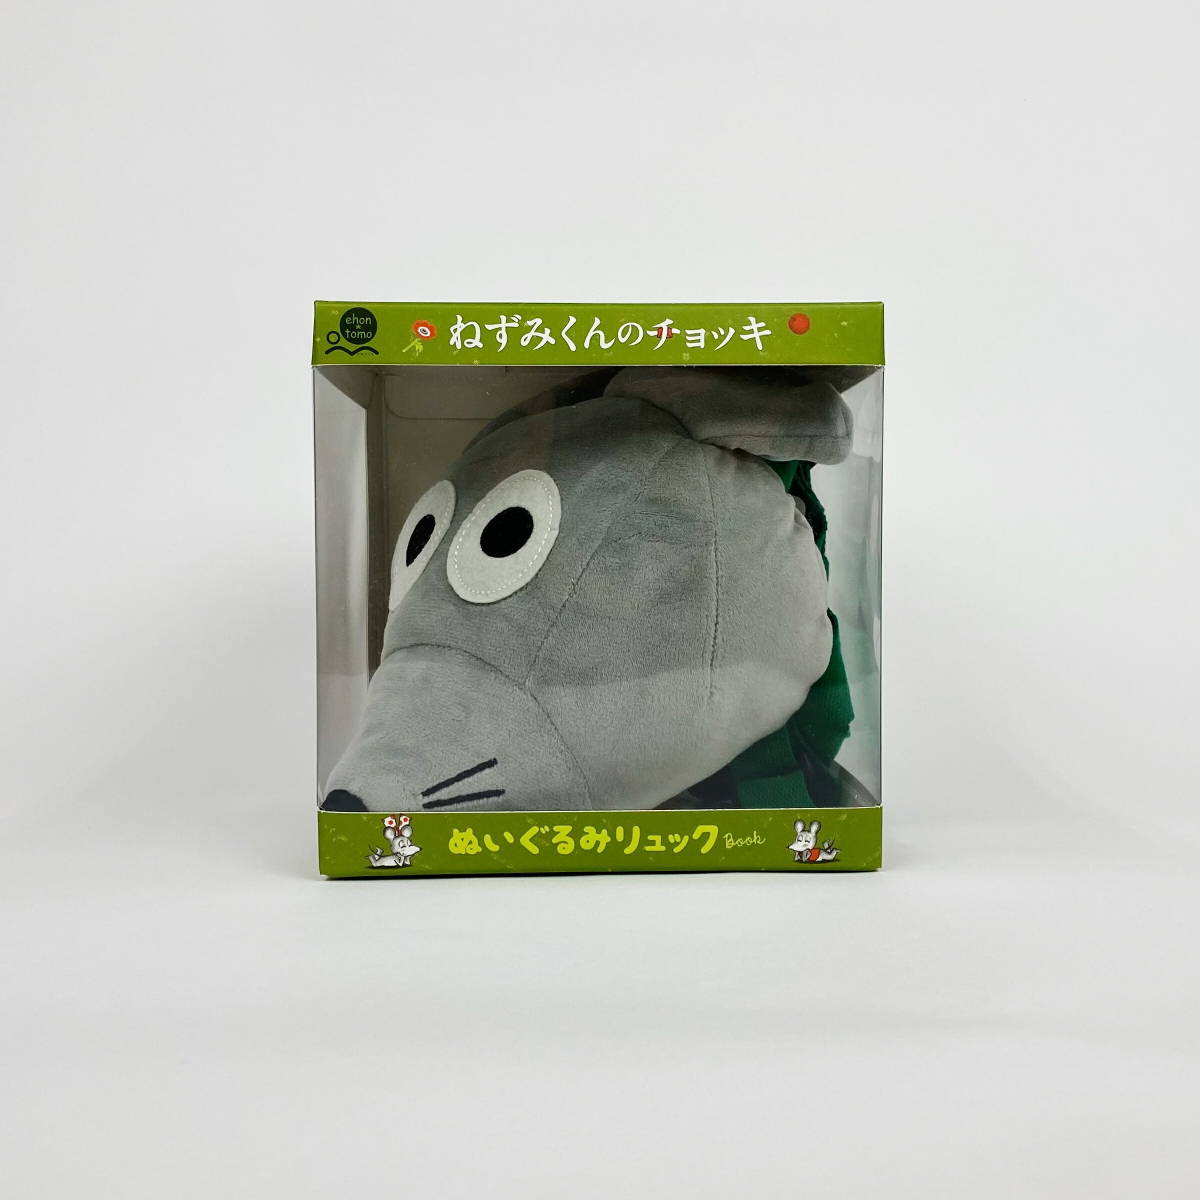  mouse kun. choki soft toy rucksack eHONTOMO Kids gift picture book 